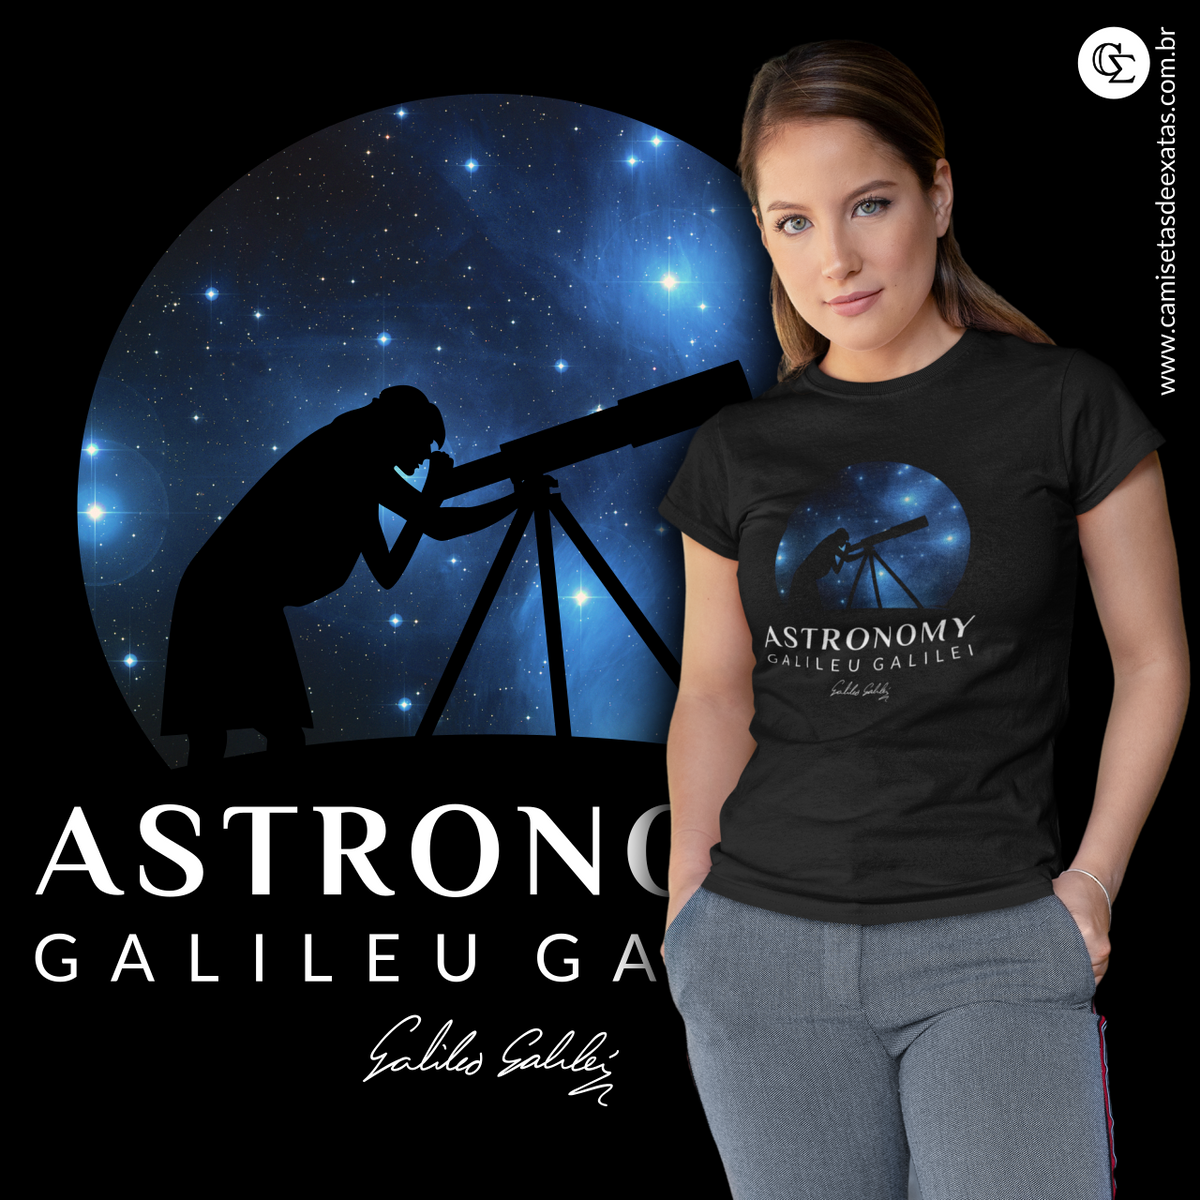 Nome do produto: ASTRONOMY - GALILEU GALILEI [BABY LONG]